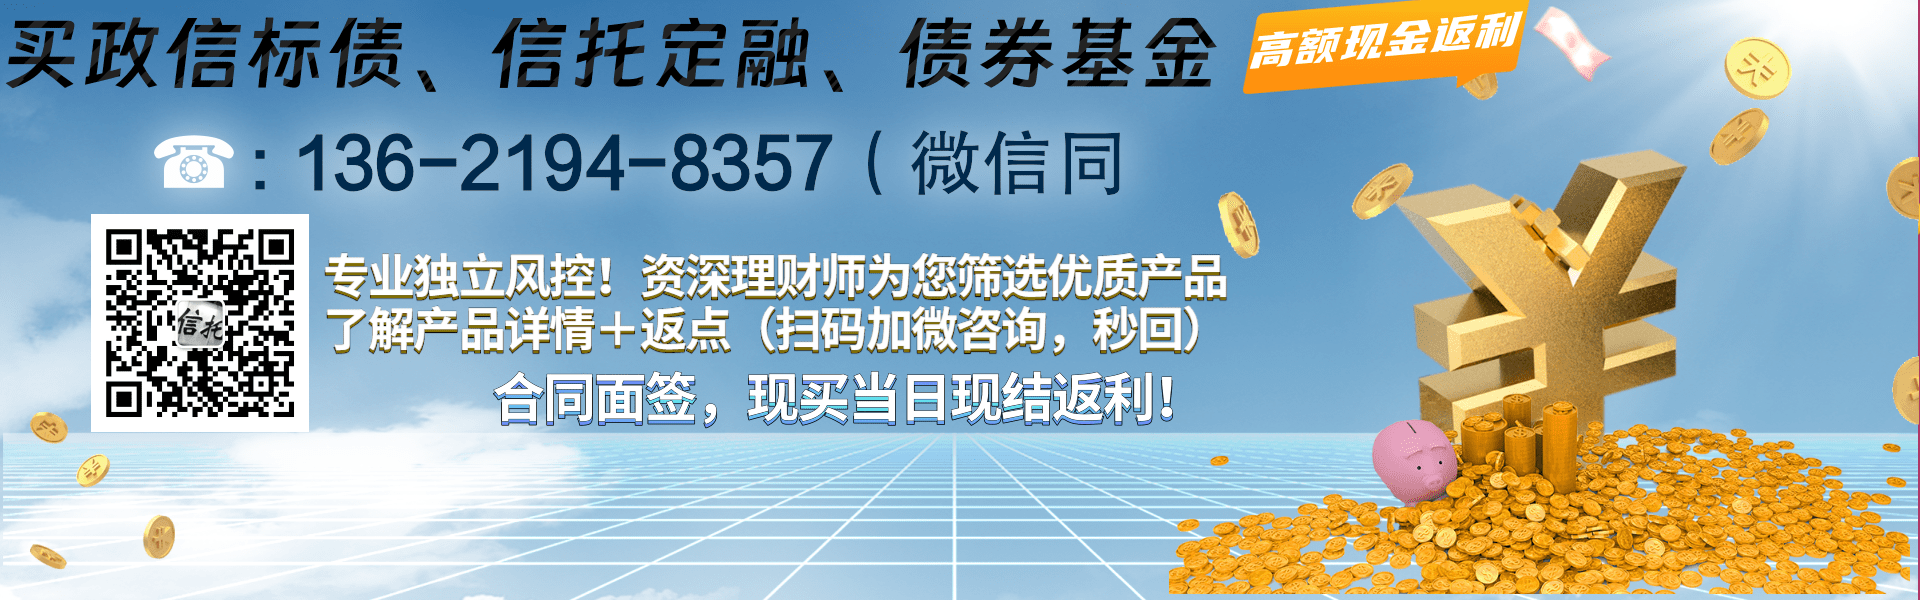 安鑫一号-开达投资应收债权资产2023年（001期-007期）